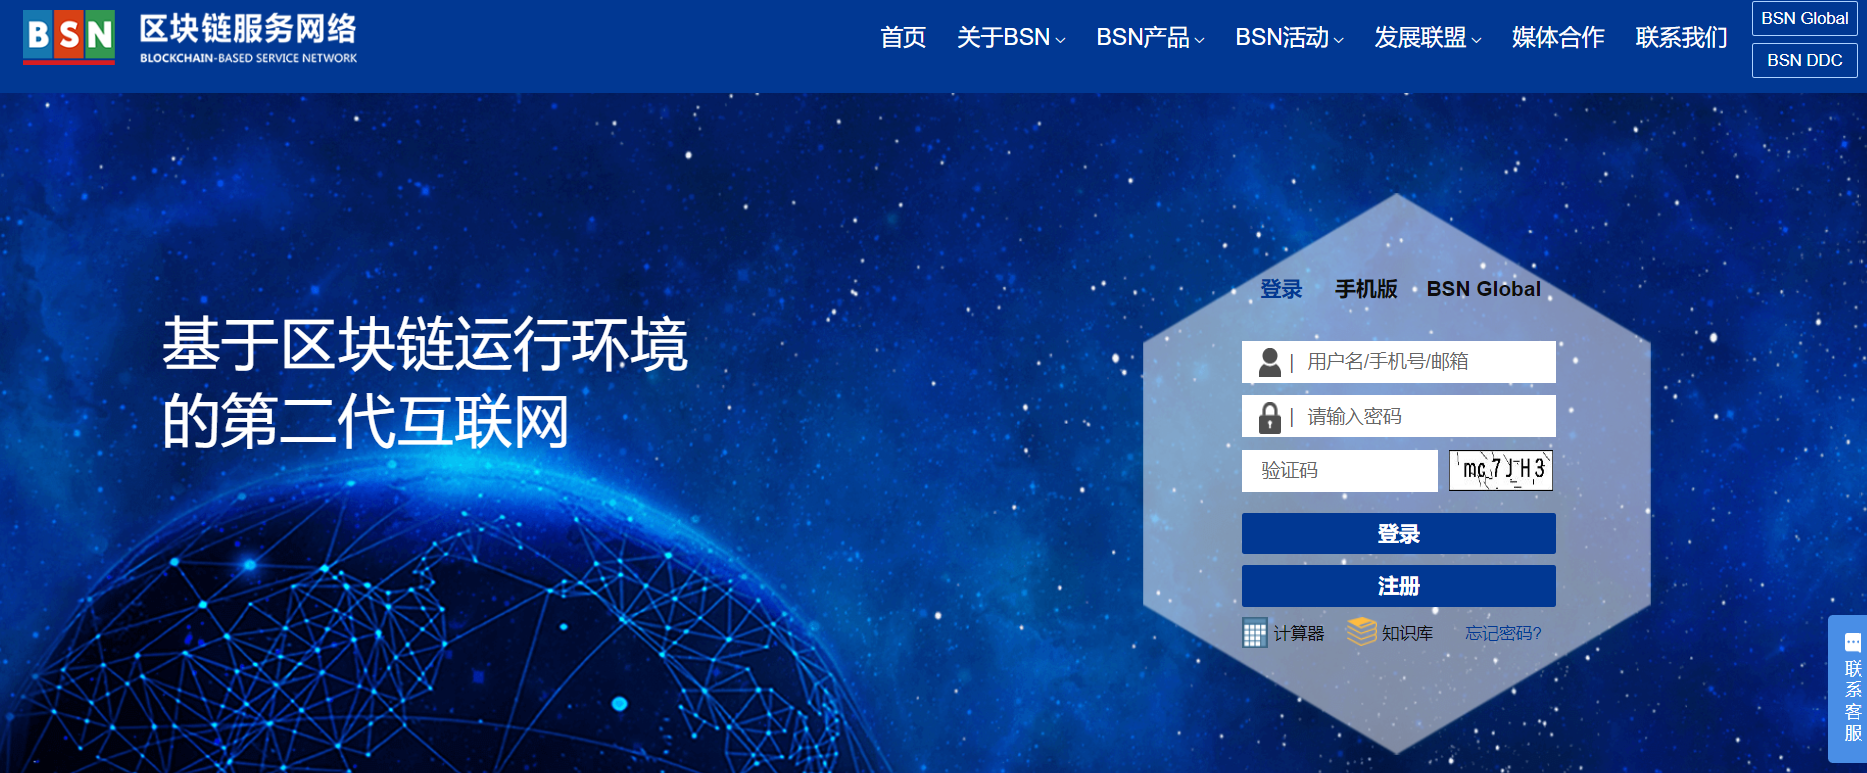 Blockchain Service Network BSN homepage